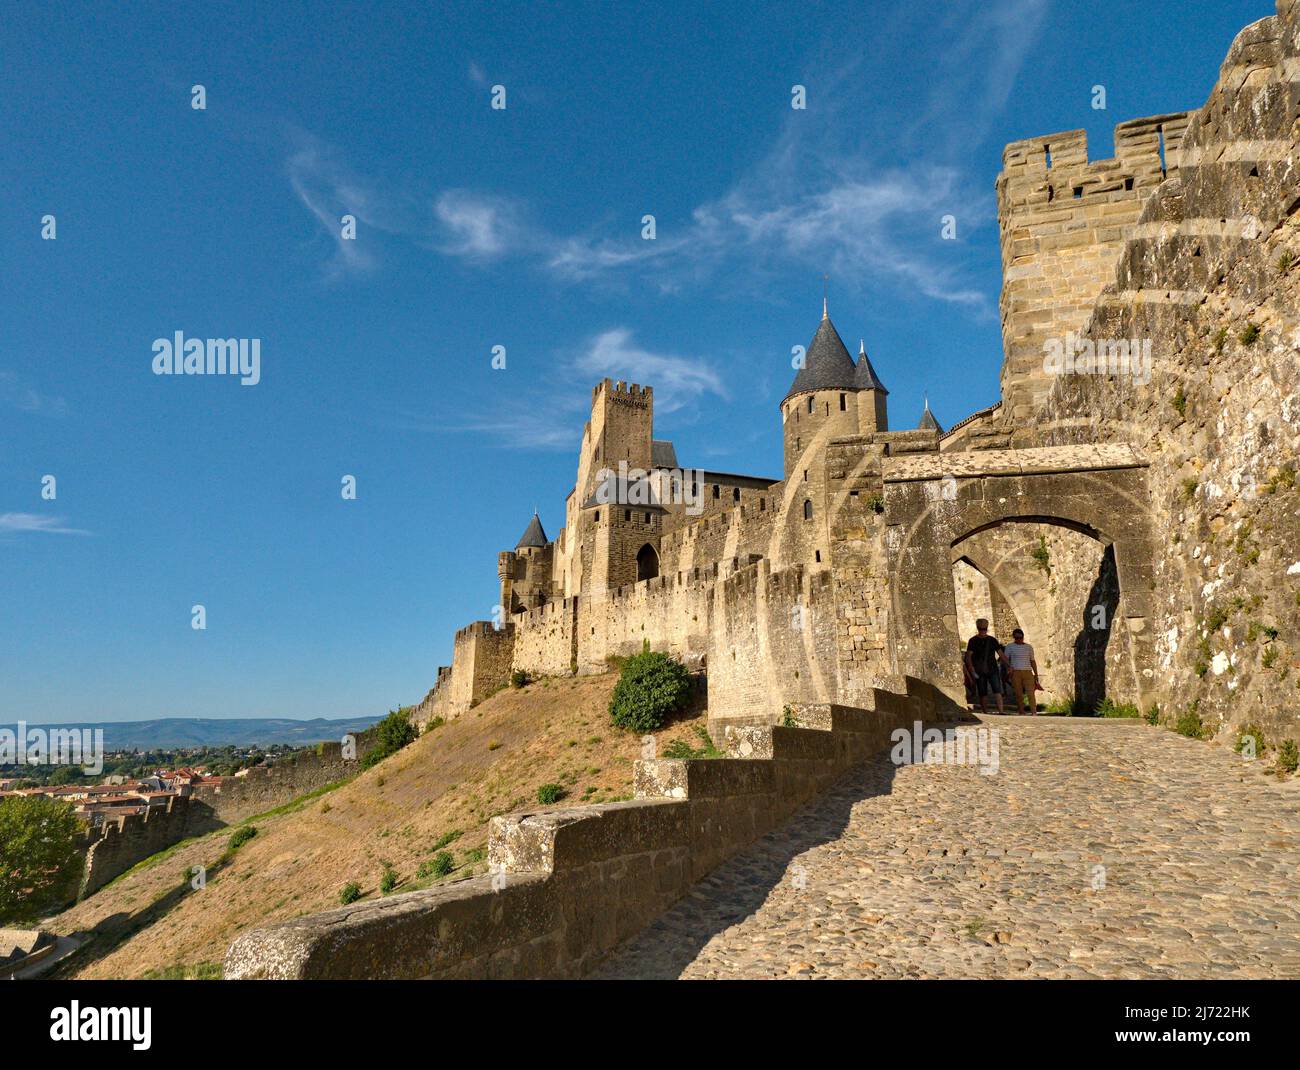 Carcassonne, Weltkulturerbe der UNESCO, ist eine mittelalterliche Festungsstadt an der Aude, Okzitanien, Frankreich Stockfoto